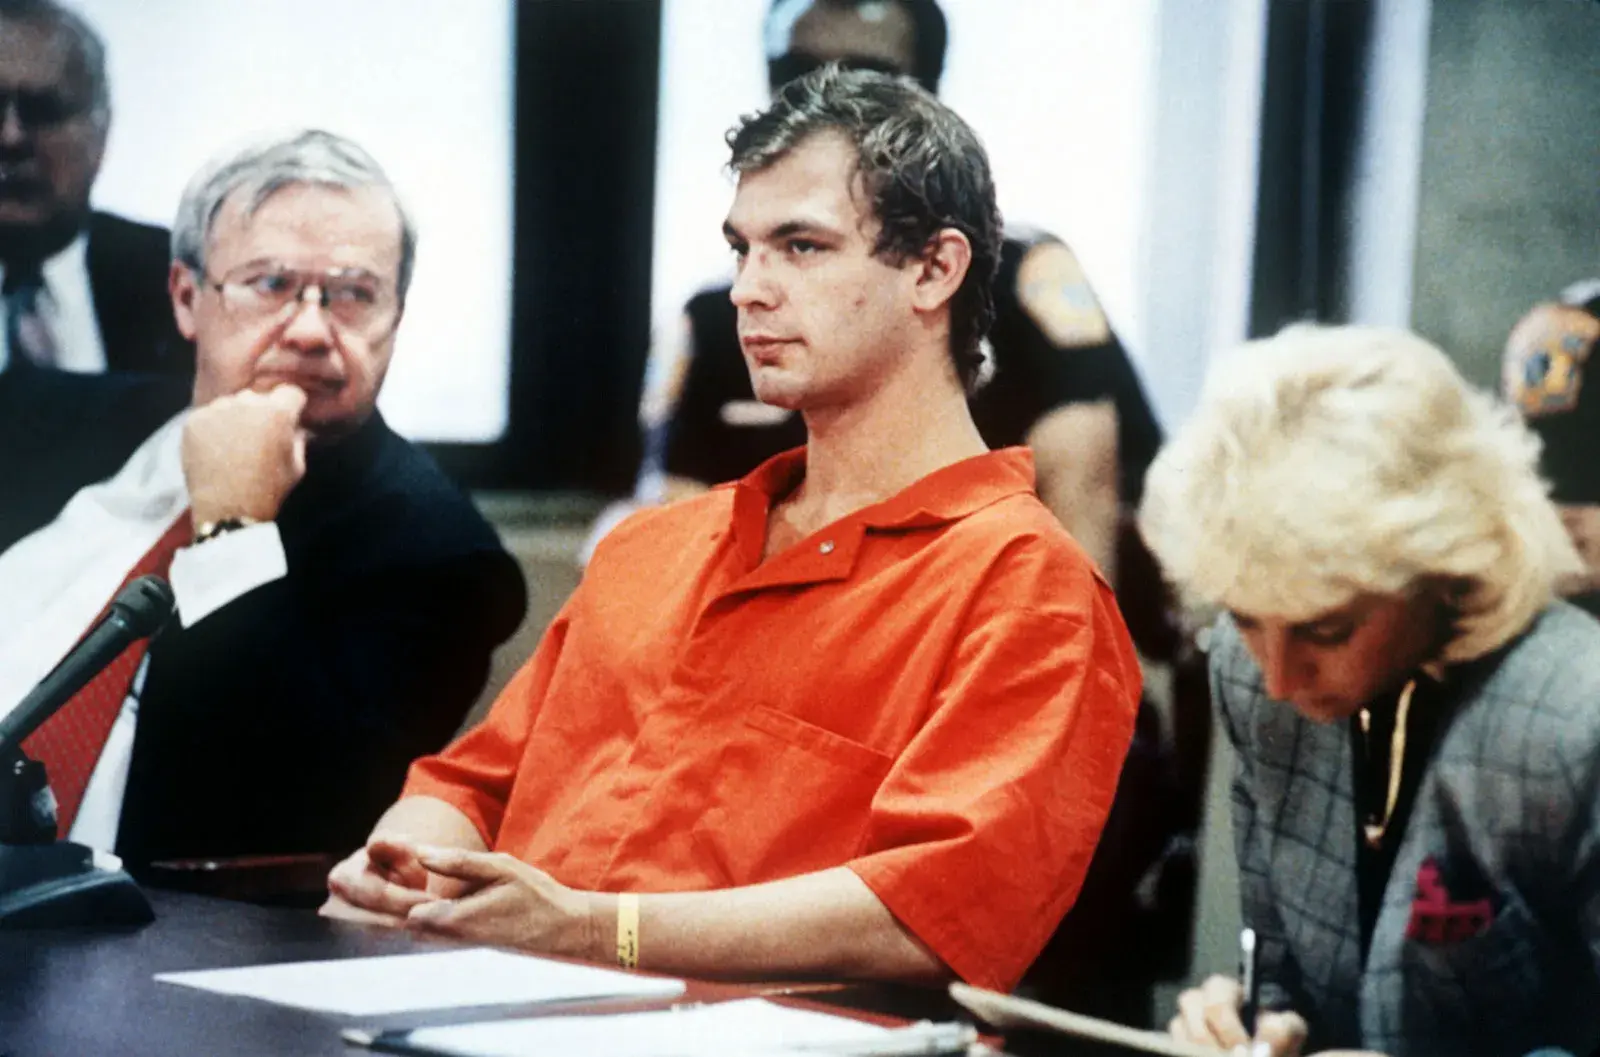 Jeffrey-Dahmer-attorneys-hearing-Milwaukee-Wisconsin-August-22-1991